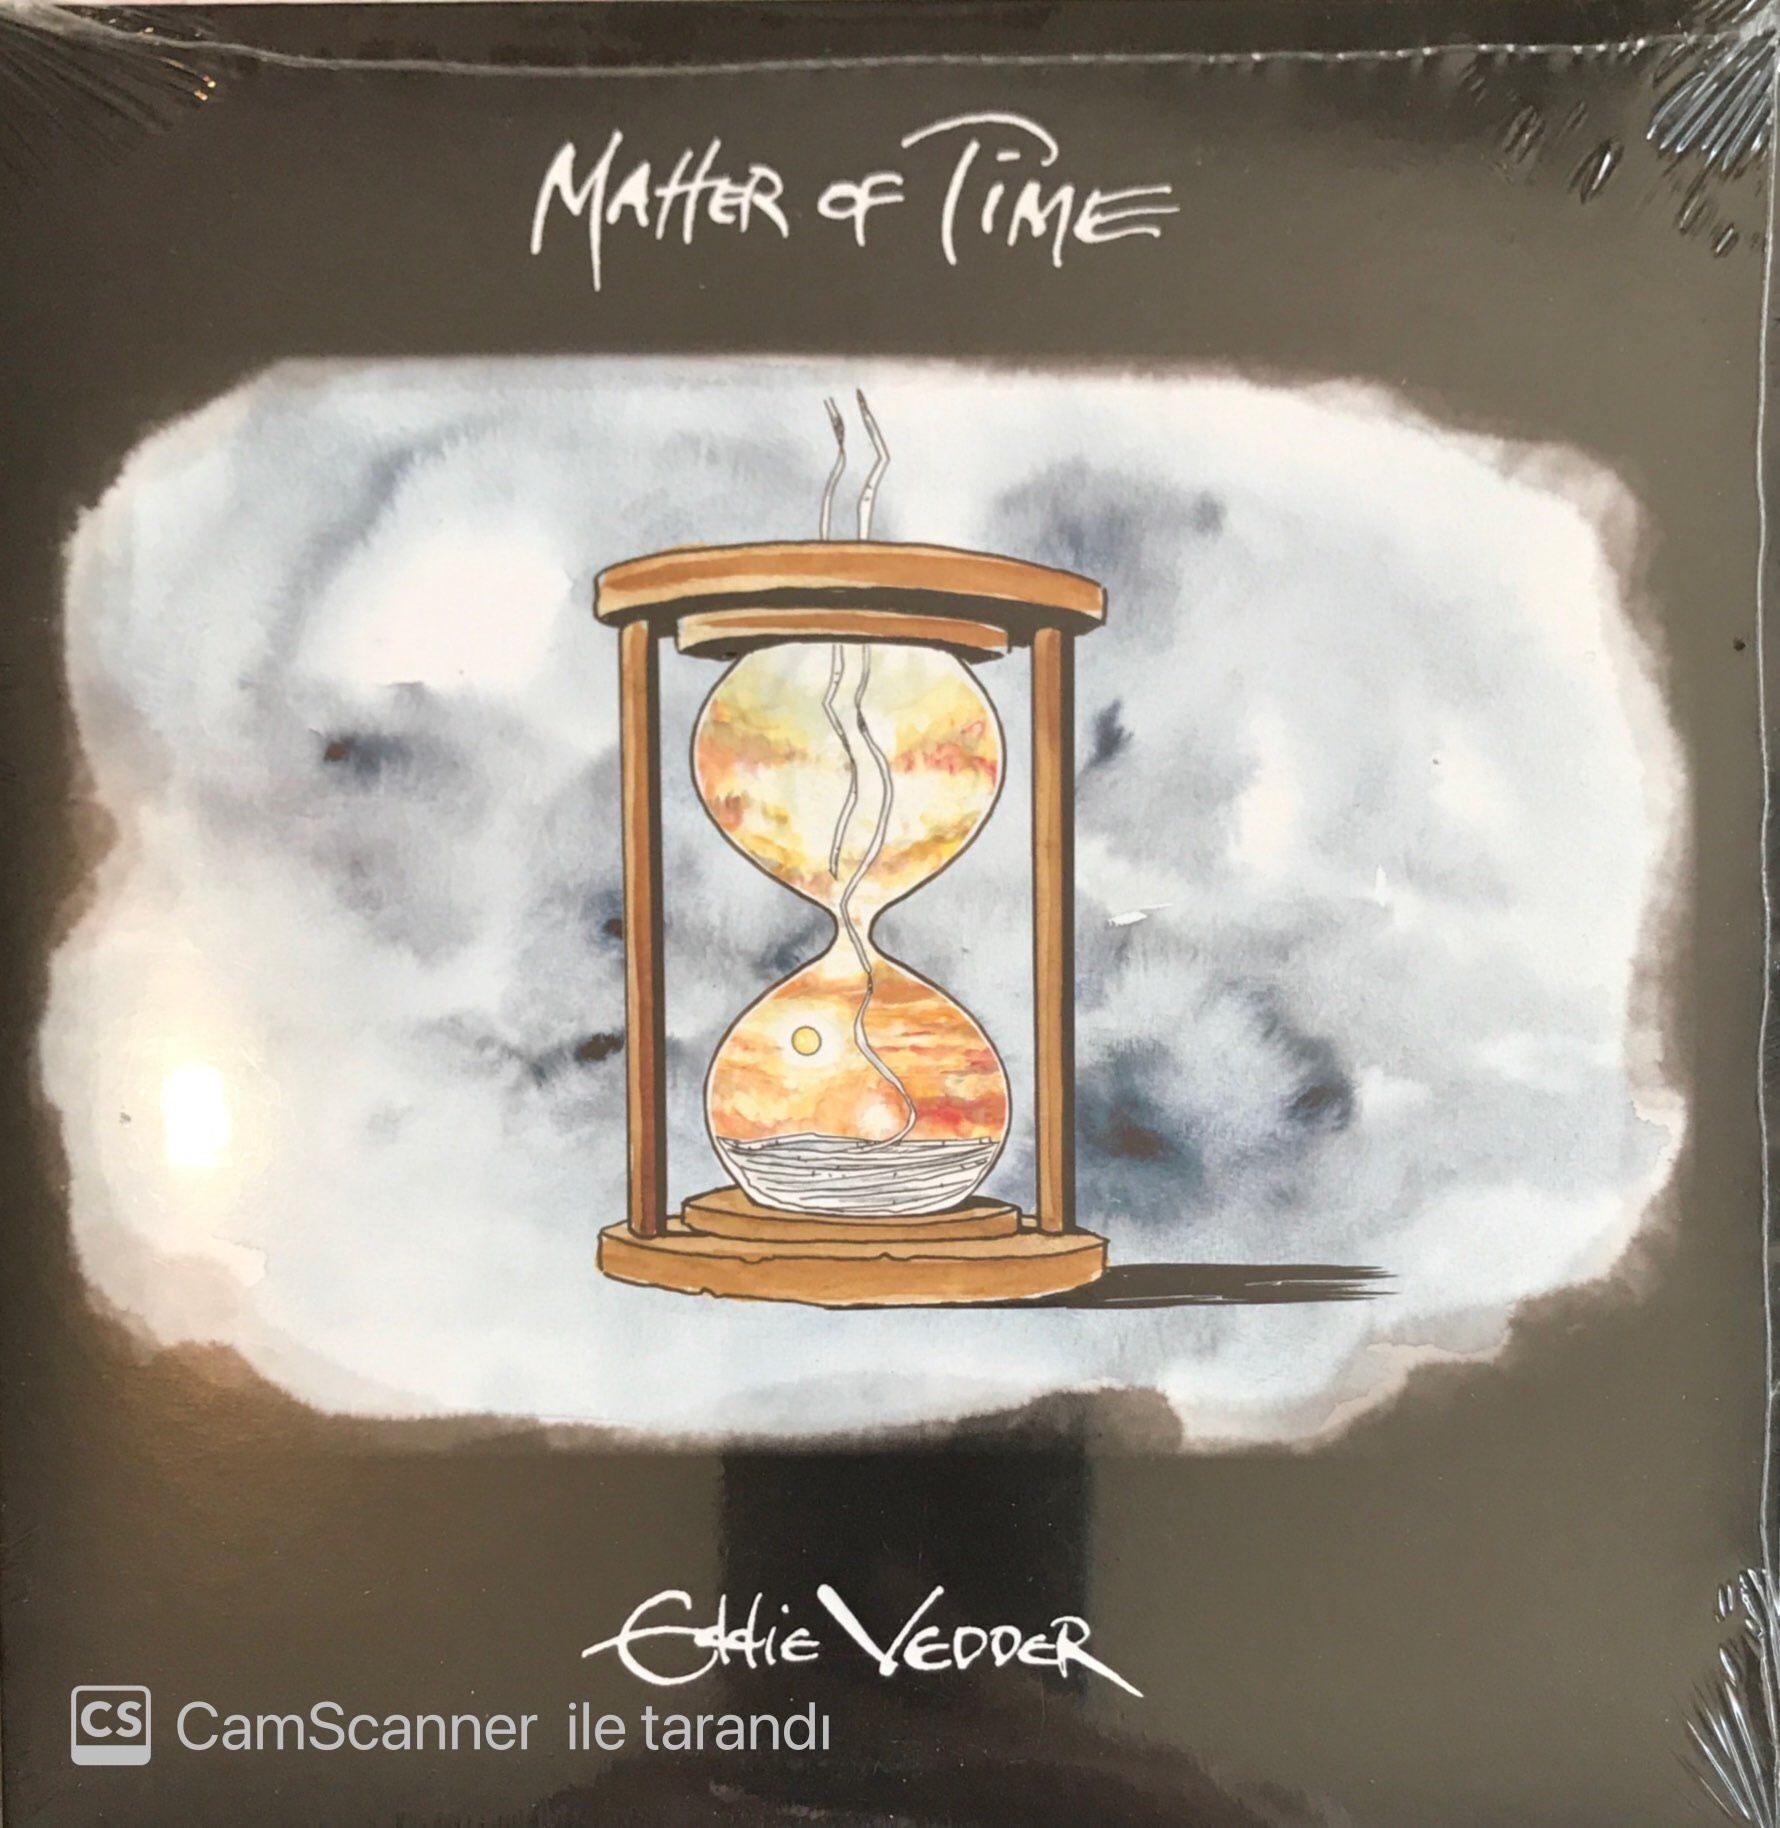 Eddie Vedder – Matter Of Time 45lik